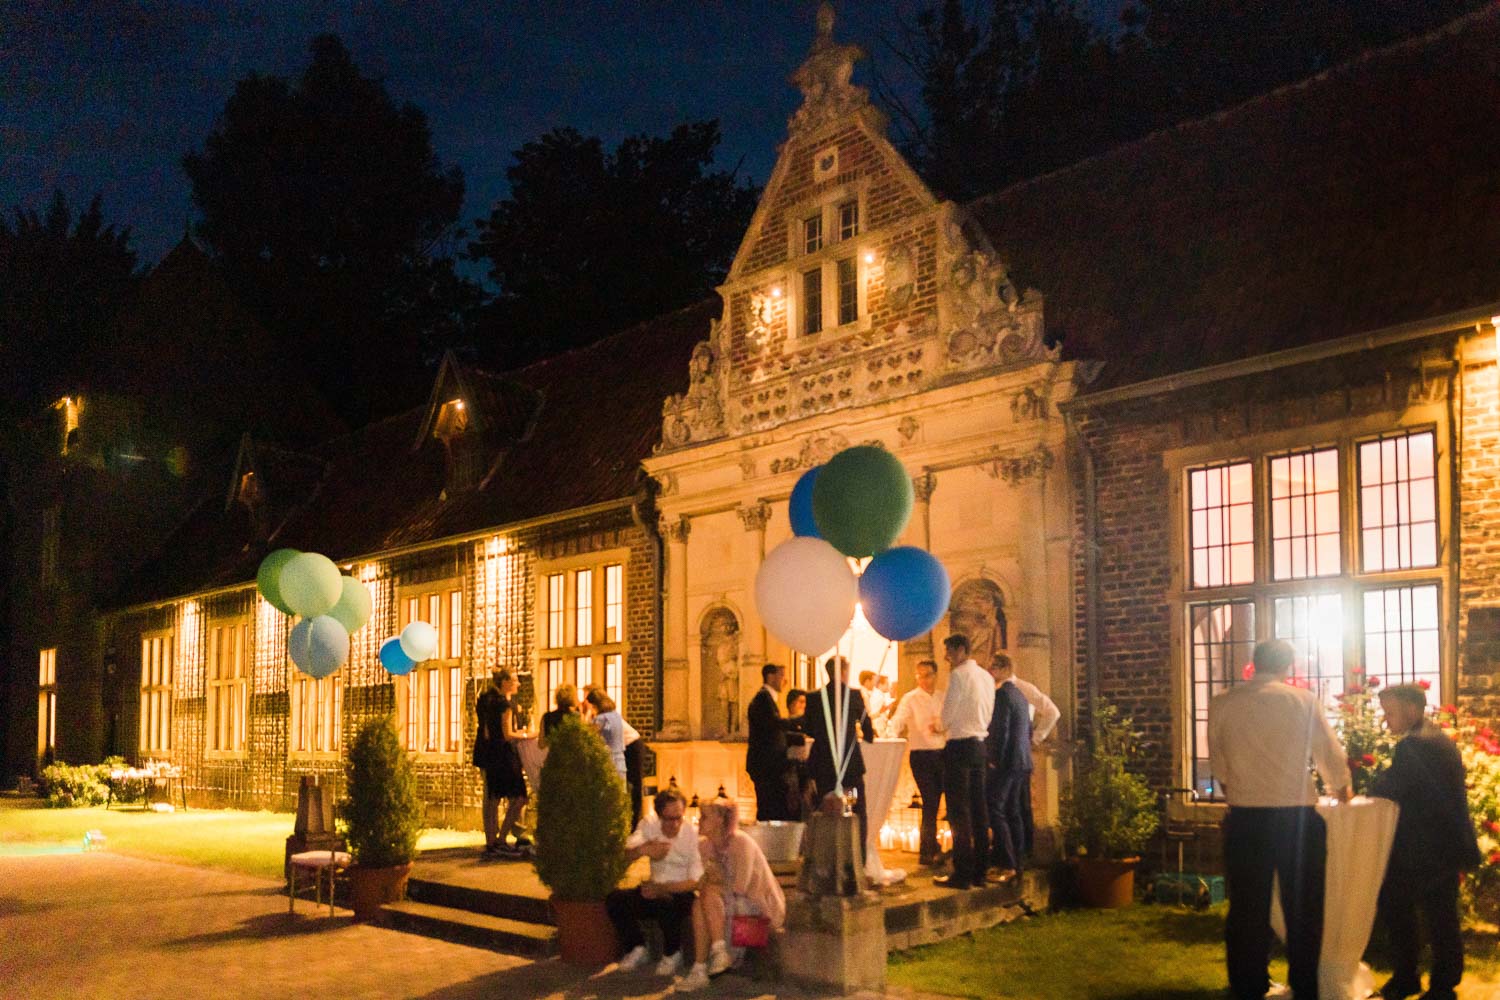 Gäste stehen an Stehtischen vor der Orangerie von Haus Ruhr in Senden bei einer Hochzeitsfeier während der blauen Stunde. Die Orangerie ist hell erleuchtet mit Kerzen und Luftballons.